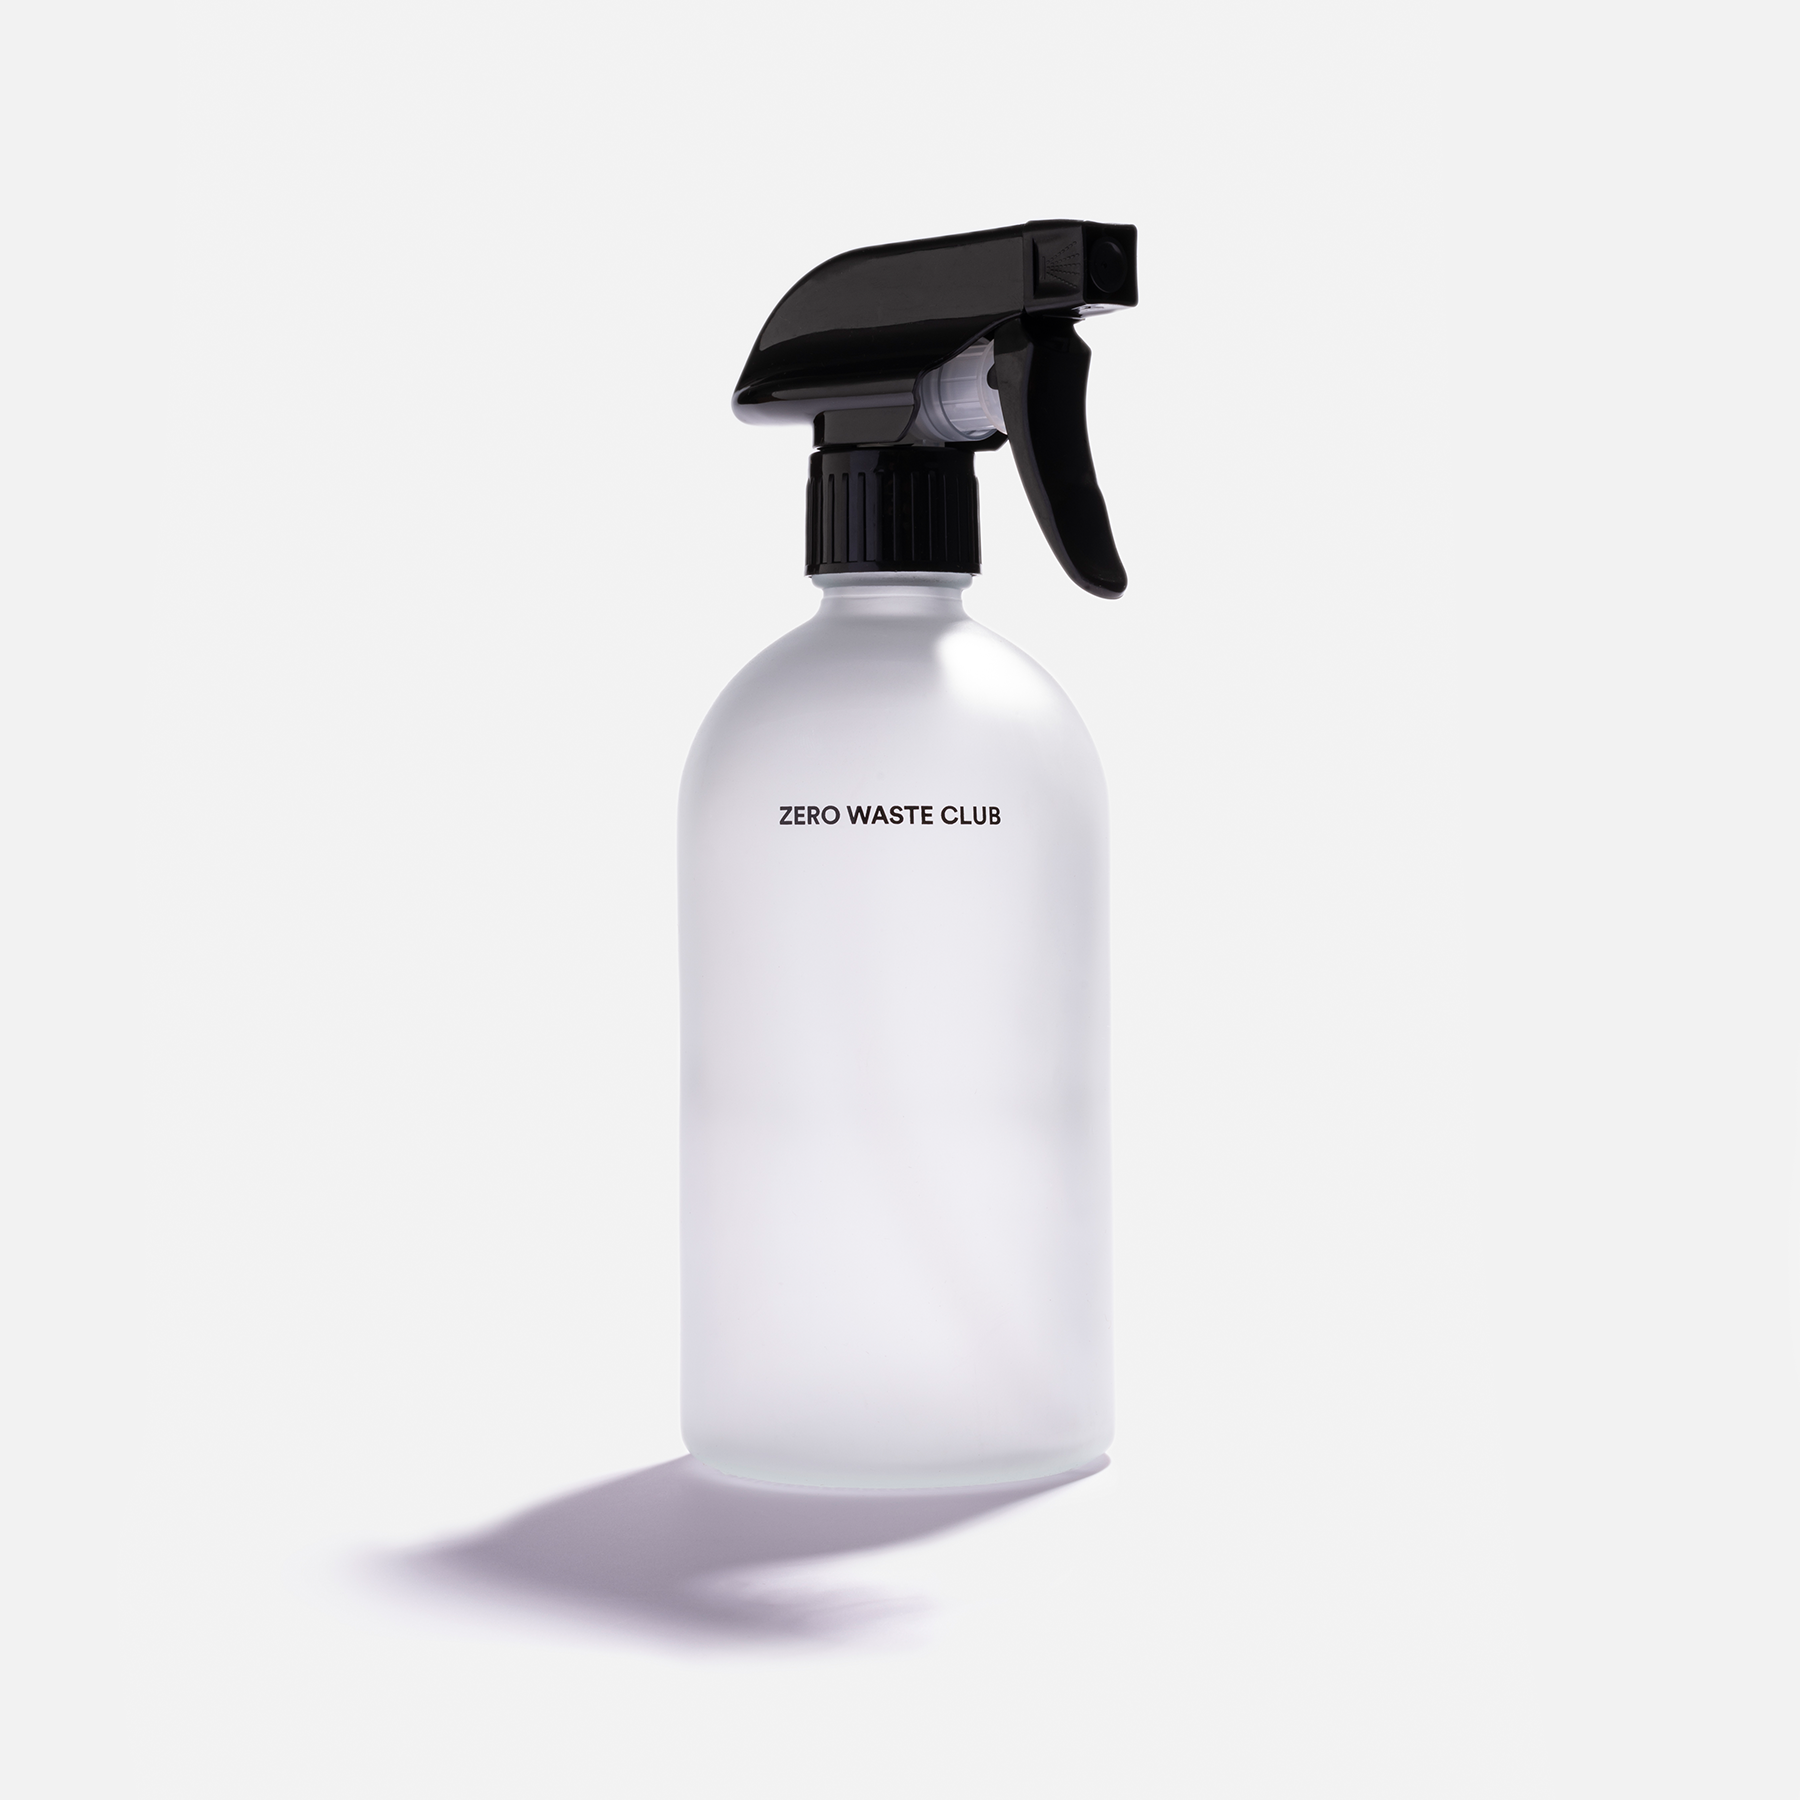 Reusable Glass Spray Bottle - 500ml